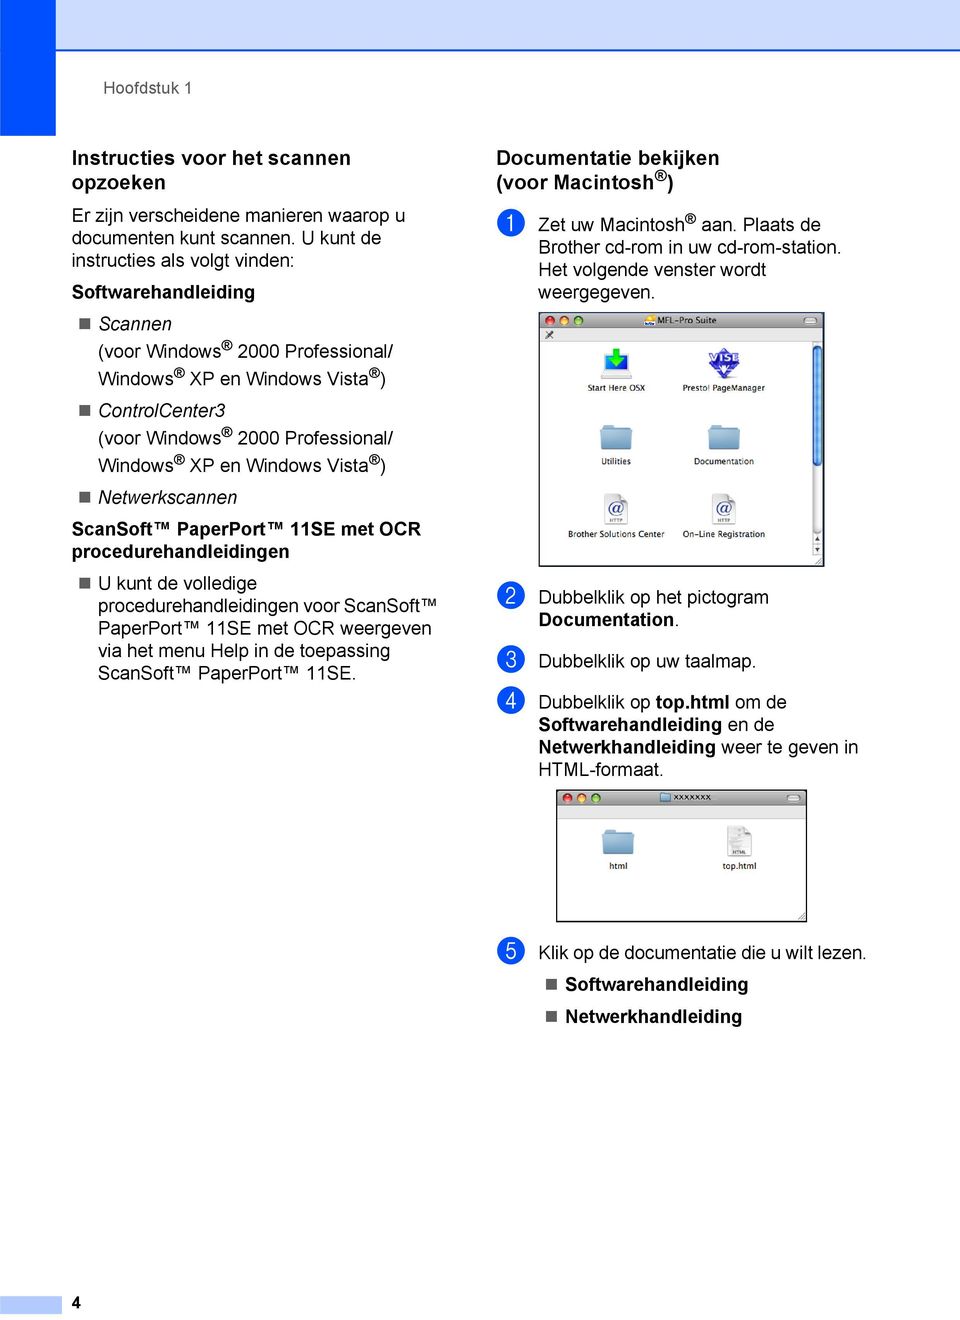 Windows Vista ) Netwerkscannen ScanSoft PaperPort 11SE met OCR procedurehandleidingen U kunt de volledige procedurehandleidingen voor ScanSoft PaperPort 11SE met OCR weergeven via het menu Help in de